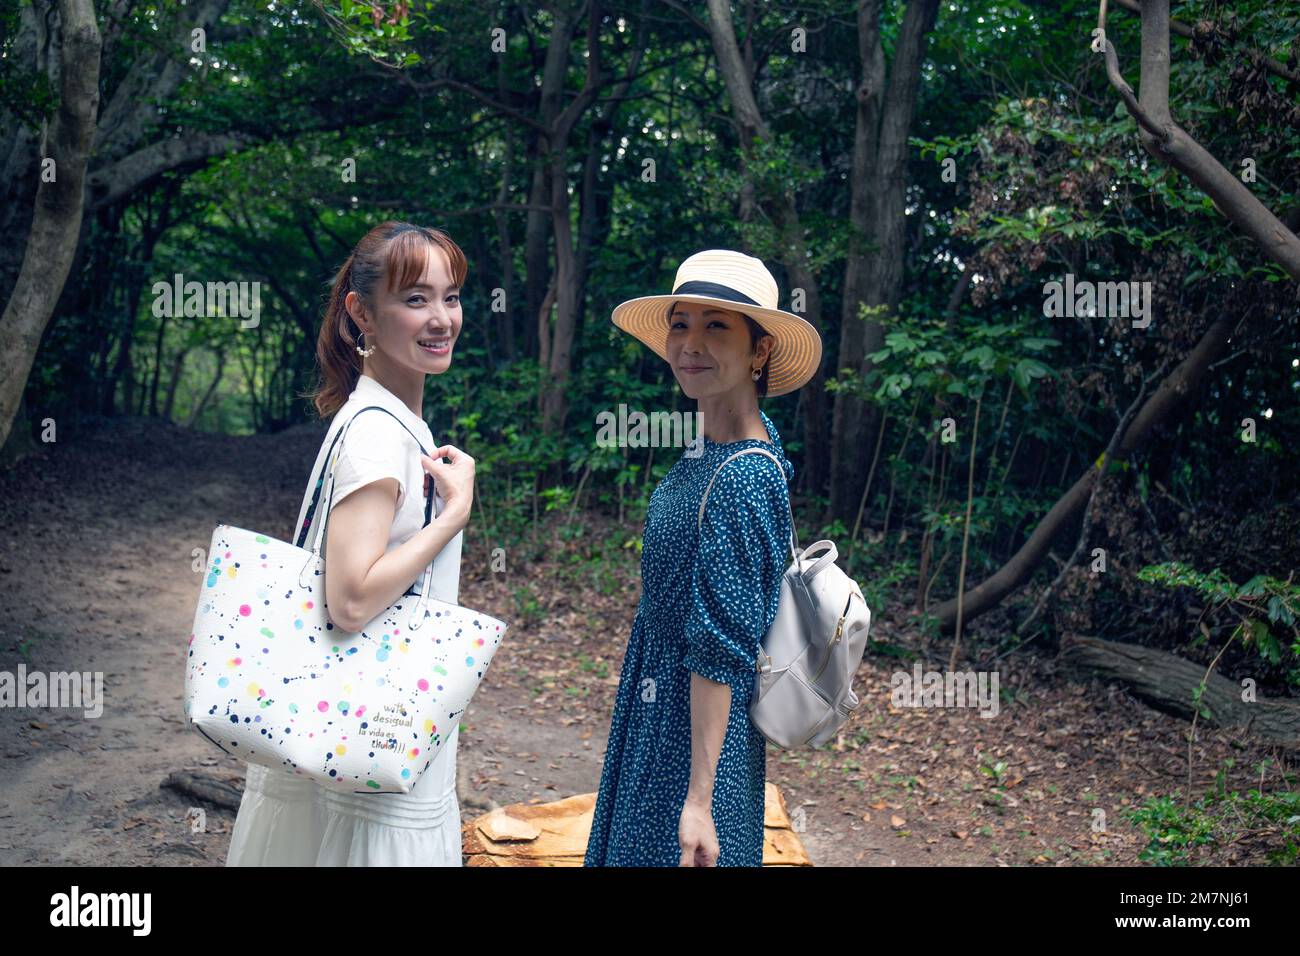 Due donne giapponesi mature in un parco, che trasportano le borse, in una giornata fuori, la testa si girò per sorridere alla macchina fotografica. Foto Stock